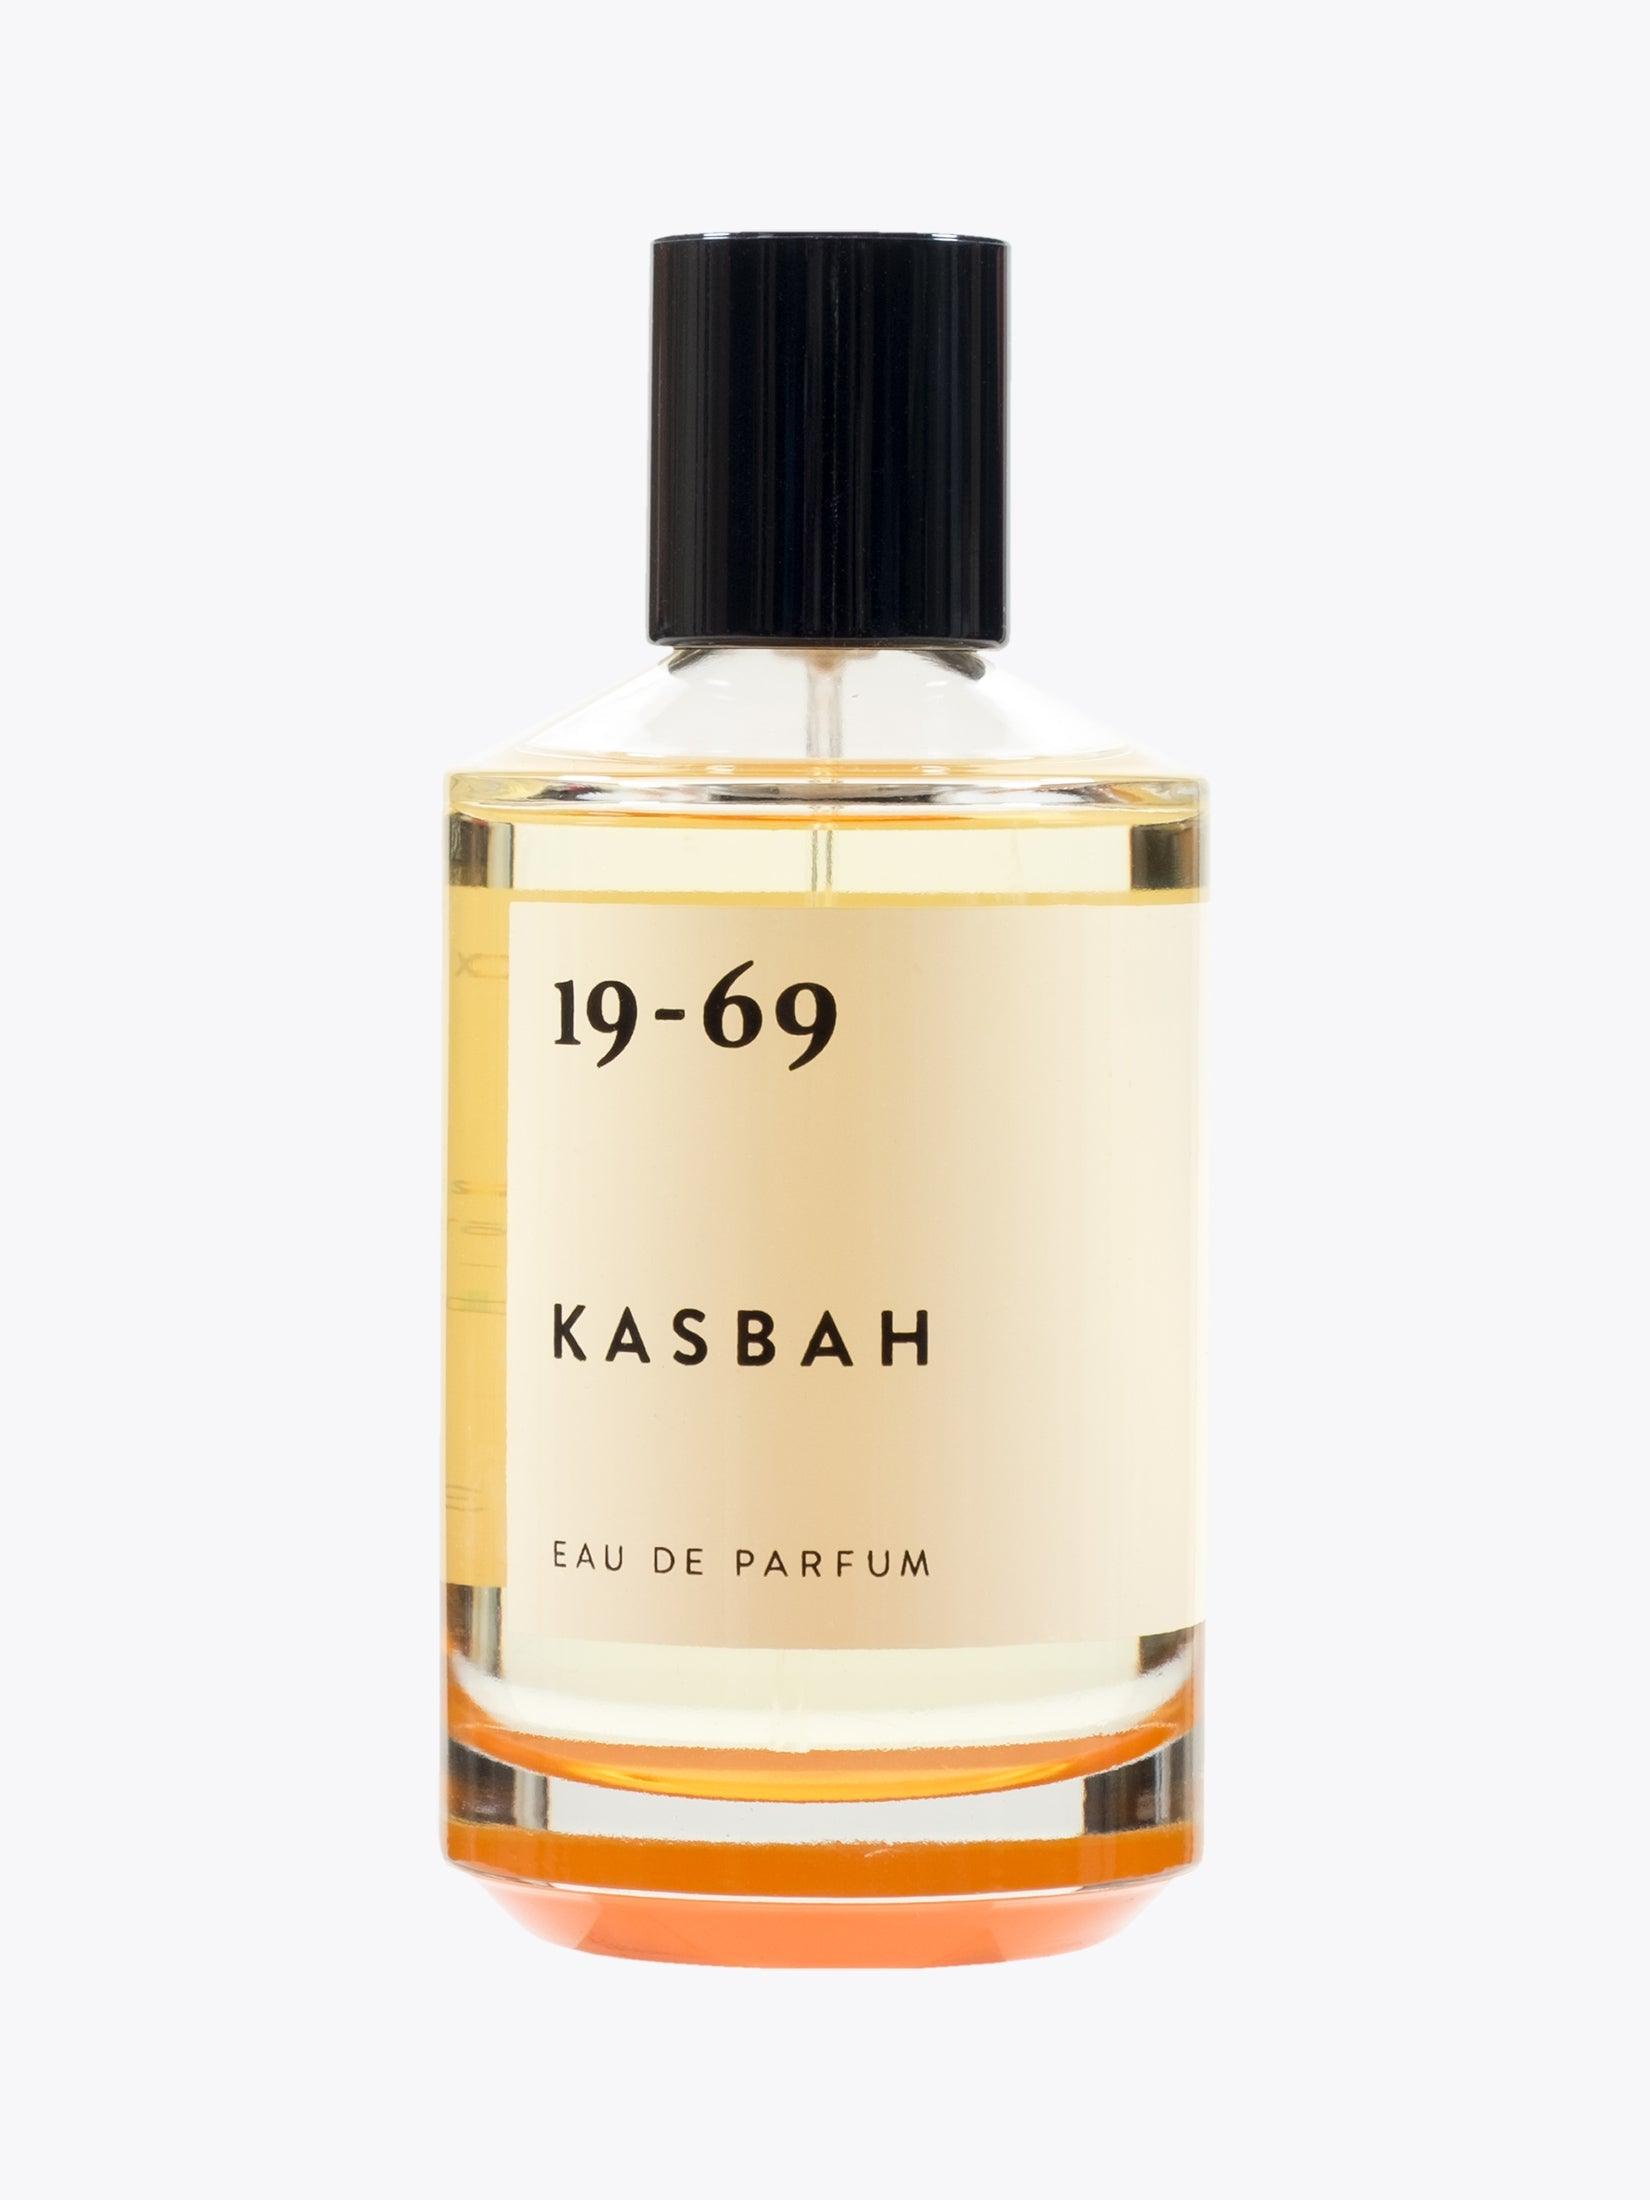 19-69 Kasbah Eau de Parfum 100ml